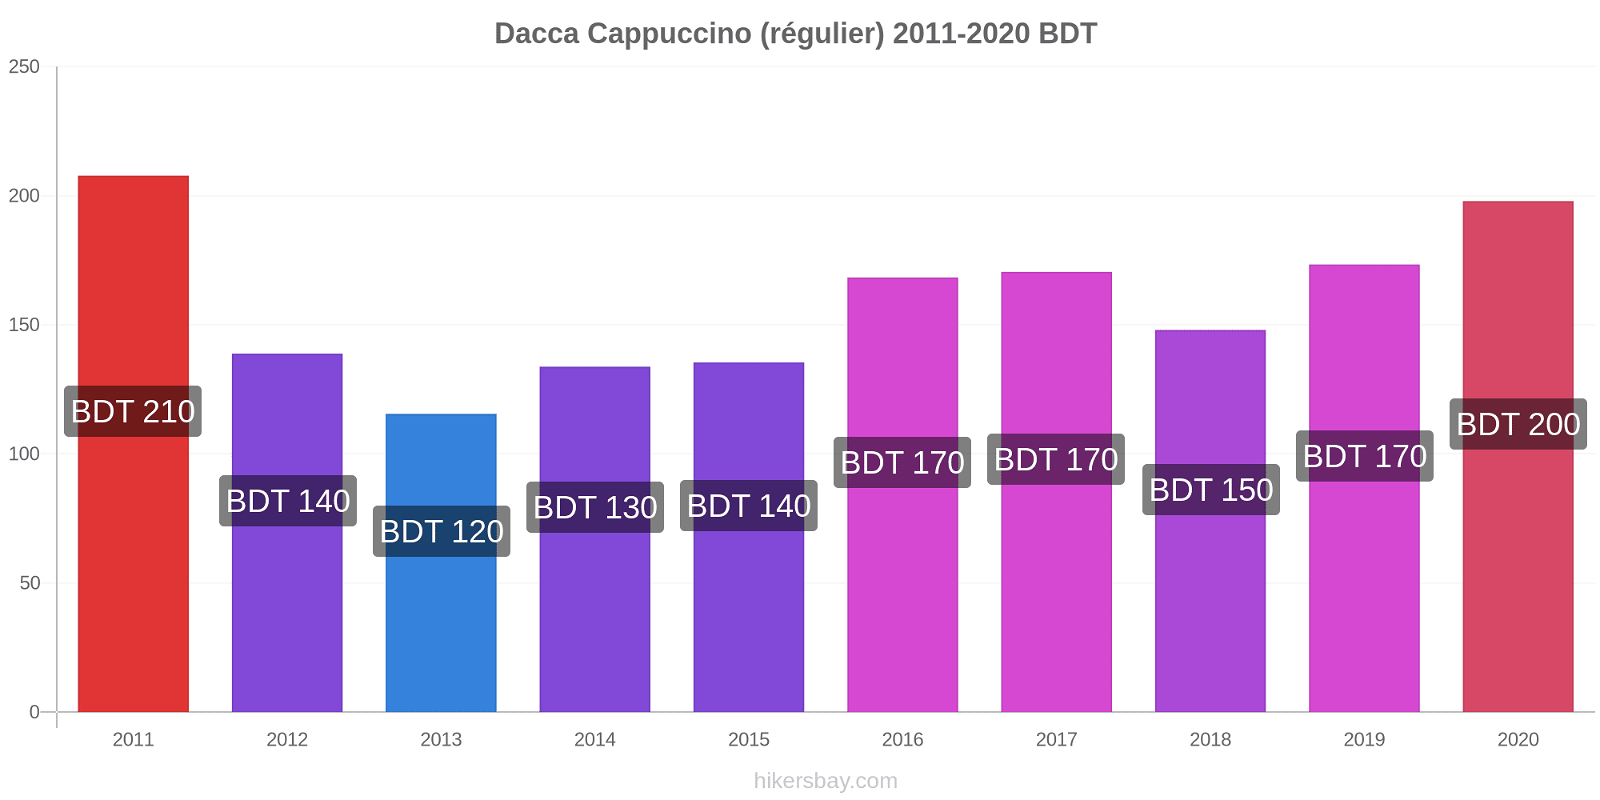 Dacca changements de prix Cappuccino (régulier) hikersbay.com